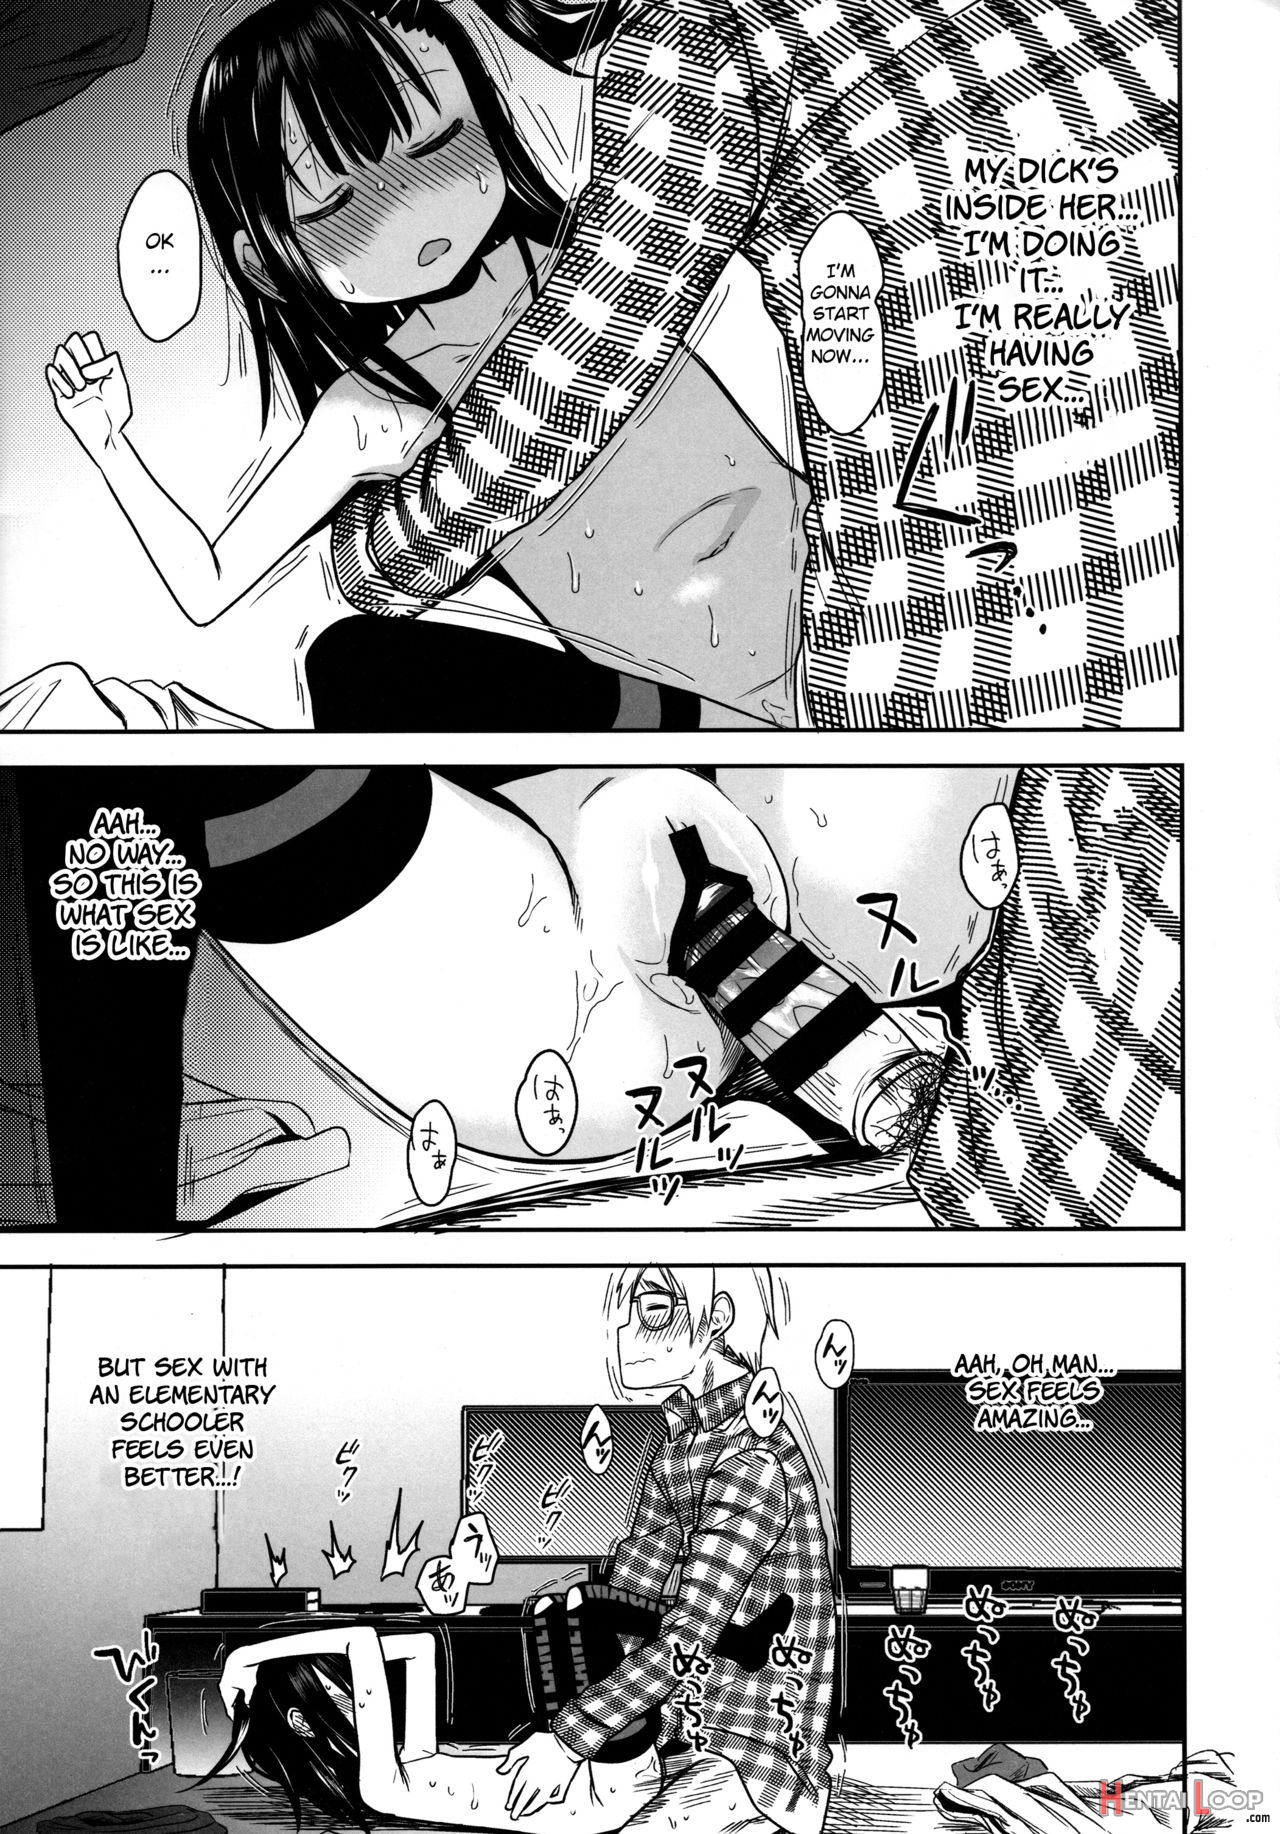 Tonari No Mako-chan Season 2 Vol. 2 page 27